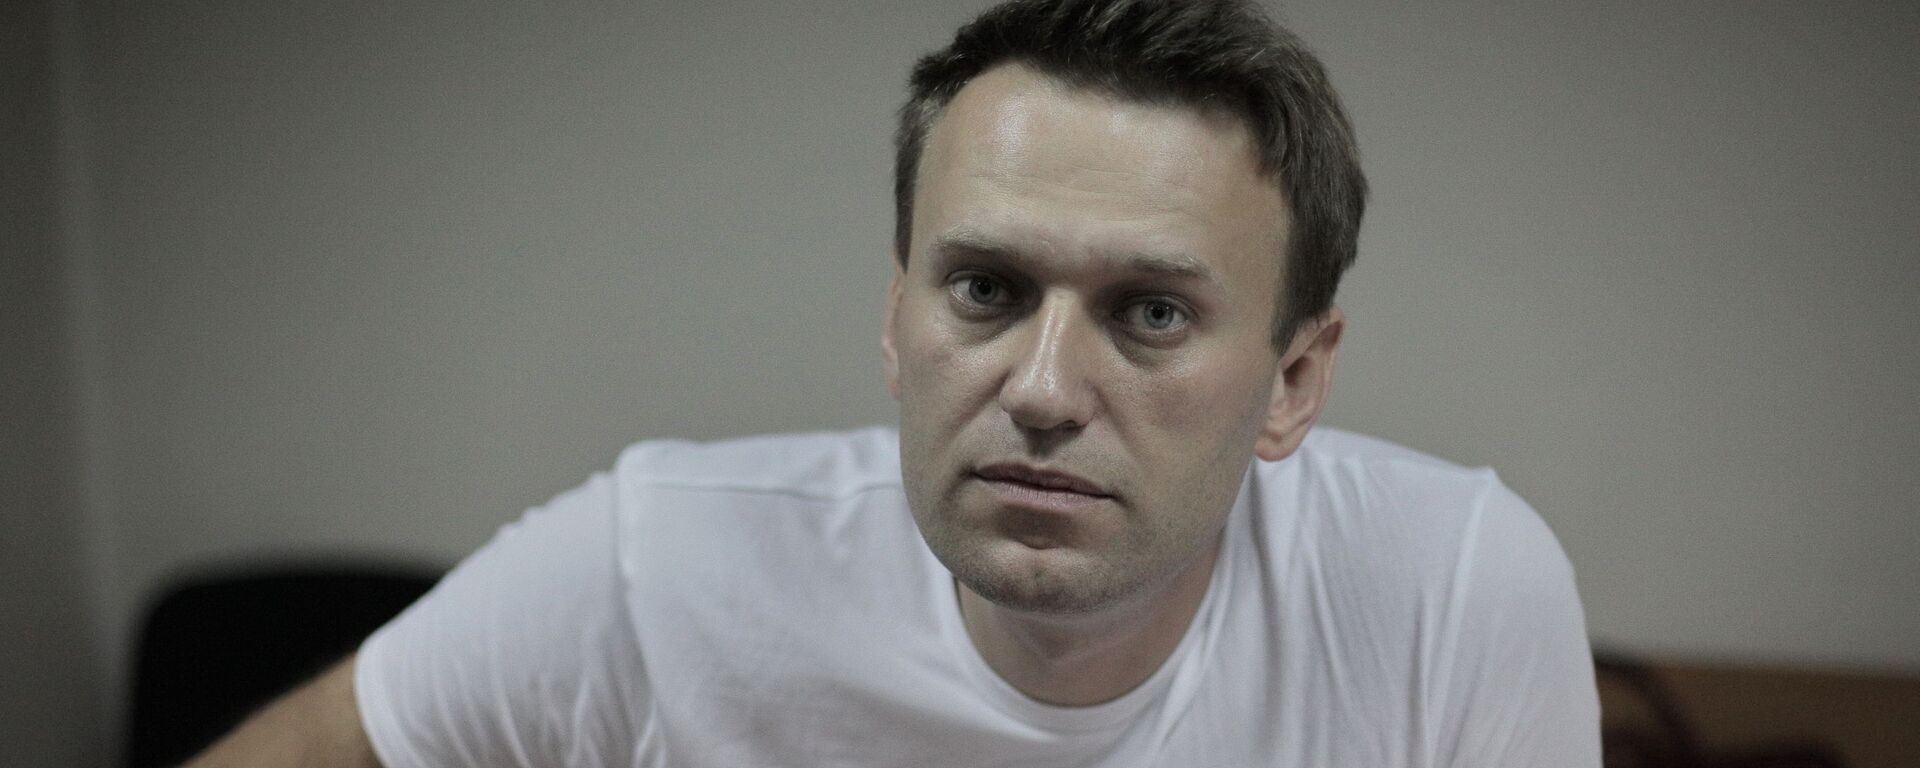 Алексей Навальный  - Sputnik Latvija, 1920, 18.09.2020